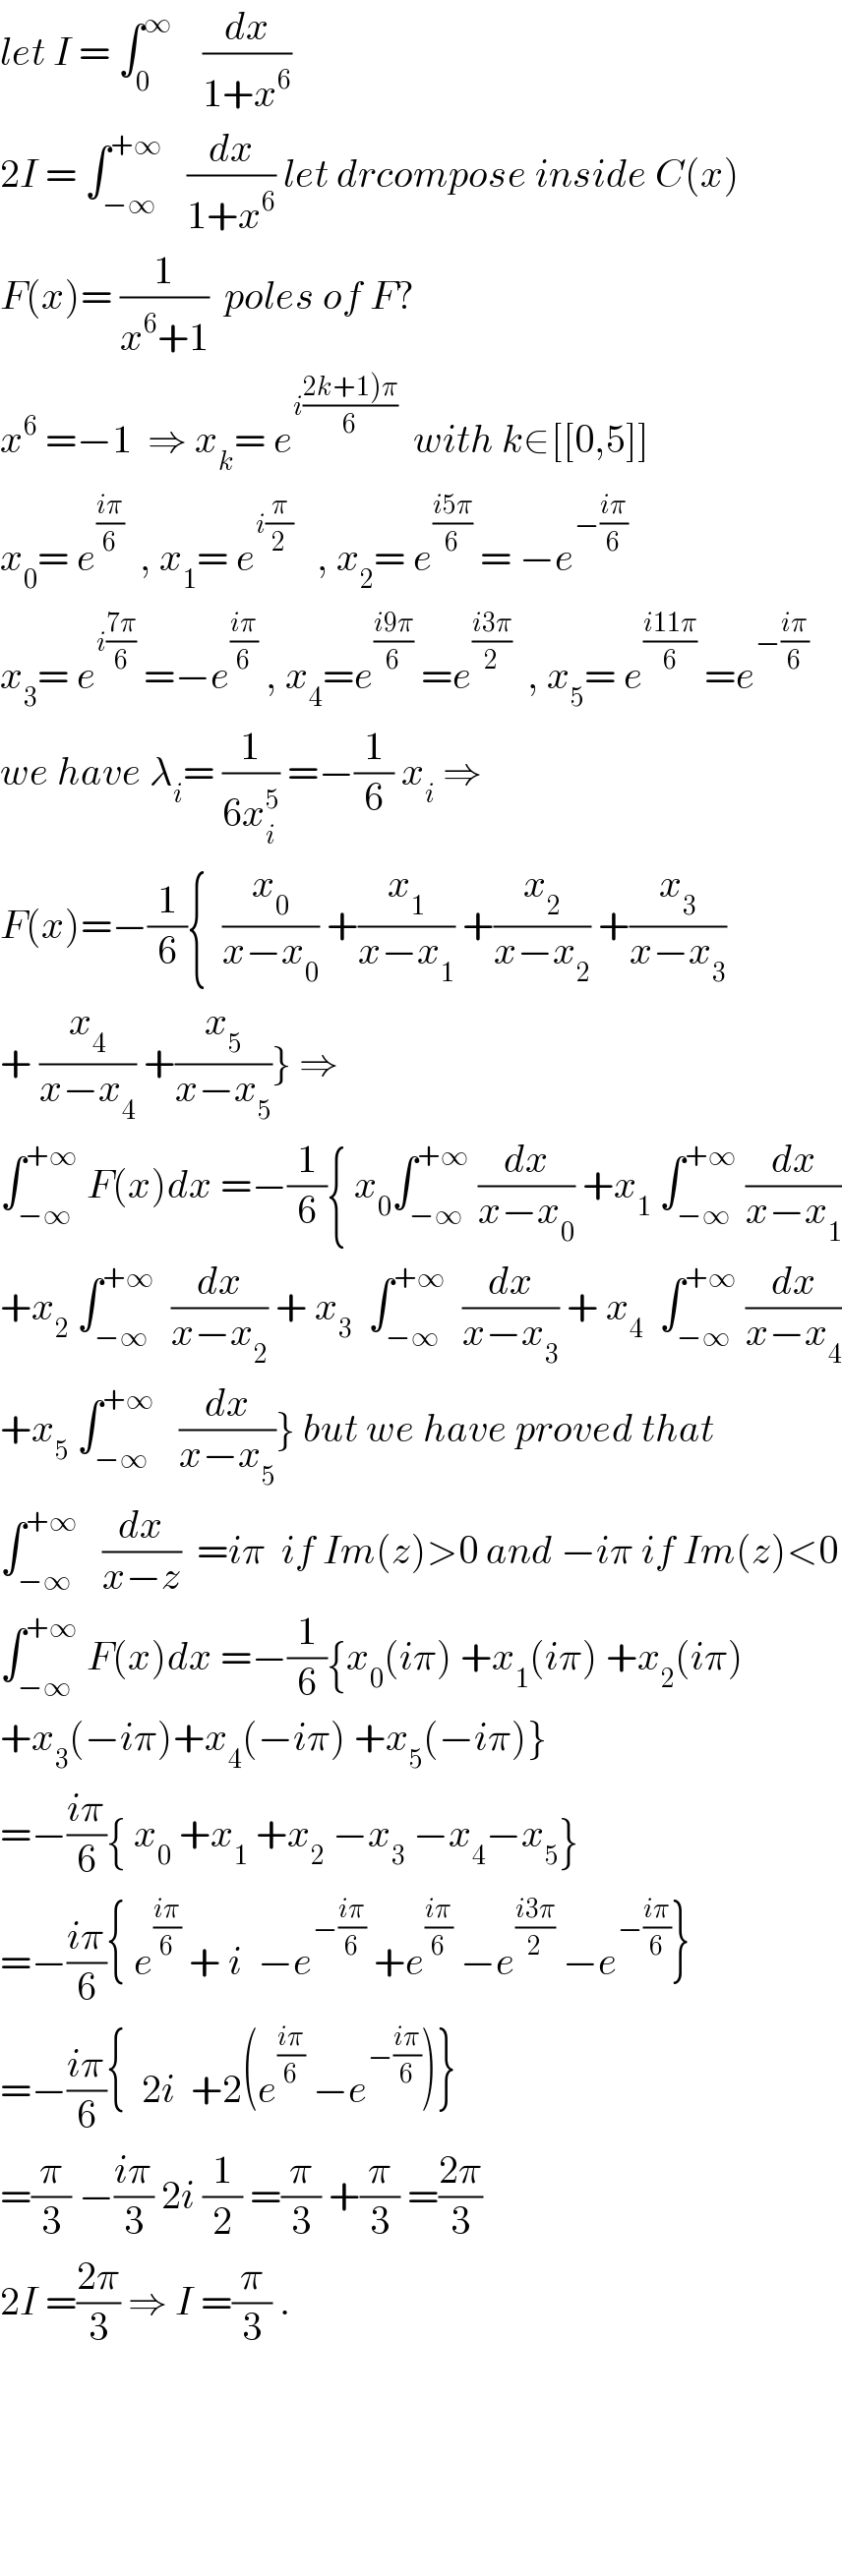 let I = ∫_0 ^∞     (dx/(1+x^6 ))  2I = ∫_(−∞) ^(+∞)    (dx/(1+x^6 )) let drcompose inside C(x)  F(x)= (1/(x^6 +1))  poles of F?  x^6  =−1  ⇒ x_k = e^(i((2k+1)π)/6))   with k∈[[0,5]]  x_0 = e^((iπ)/6)   , x_1 = e^(i(π/2))    , x_2 = e^((i5π)/6)  = −e^(−((iπ)/6))   x_3 = e^(i((7π)/6))  =−e^((iπ)/6)  , x_4 =e^((i9π)/6)  =e^((i3π)/2)   , x_5 = e^((i11π)/6)  =e^(−((iπ)/6))   we have λ_i = (1/(6x_i ^5 )) =−(1/6) x_i  ⇒  F(x)=−(1/6){  (x_0 /(x−x_0 )) +(x_1 /(x−x_1 )) +(x_2 /(x−x_2 )) +(x_3 /(x−x_3 ))  + (x_4 /(x−x_4 )) +(x_5 /(x−x_5 ))} ⇒  ∫_(−∞) ^(+∞)  F(x)dx =−(1/6){ x_0 ∫_(−∞) ^(+∞)  (dx/(x−x_0 )) +x_1  ∫_(−∞) ^(+∞)  (dx/(x−x_1 ))  +x_2  ∫_(−∞) ^(+∞)   (dx/(x−x_2 )) + x_3   ∫_(−∞) ^(+∞)   (dx/(x−x_3 )) + x_4   ∫_(−∞) ^(+∞)  (dx/(x−x_4 ))  +x_5  ∫_(−∞) ^(+∞)    (dx/(x−x_5 ))} but we have proved that  ∫_(−∞) ^(+∞)    (dx/(x−z))  =iπ  if Im(z)>0 and −iπ if Im(z)<0  ∫_(−∞) ^(+∞)  F(x)dx =−(1/6){x_0 (iπ) +x_1 (iπ) +x_2 (iπ)  +x_3 (−iπ)+x_4 (−iπ) +x_5 (−iπ)}  =−((iπ)/6){ x_0  +x_1  +x_2  −x_3  −x_4 −x_5 }  =−((iπ)/6){ e^((iπ)/6)  + i  −e^(−((iπ)/6))  +e^((iπ)/6)  −e^((i3π)/2)  −e^(−((iπ)/6)) }  =−((iπ)/6){  2i  +2(e^((iπ)/6)  −e^(−((iπ)/6)) )}  =(π/3) −((iπ)/3) 2i (1/2) =(π/3) +(π/3) =((2π)/3)  2I =((2π)/3) ⇒ I =(π/3) .          